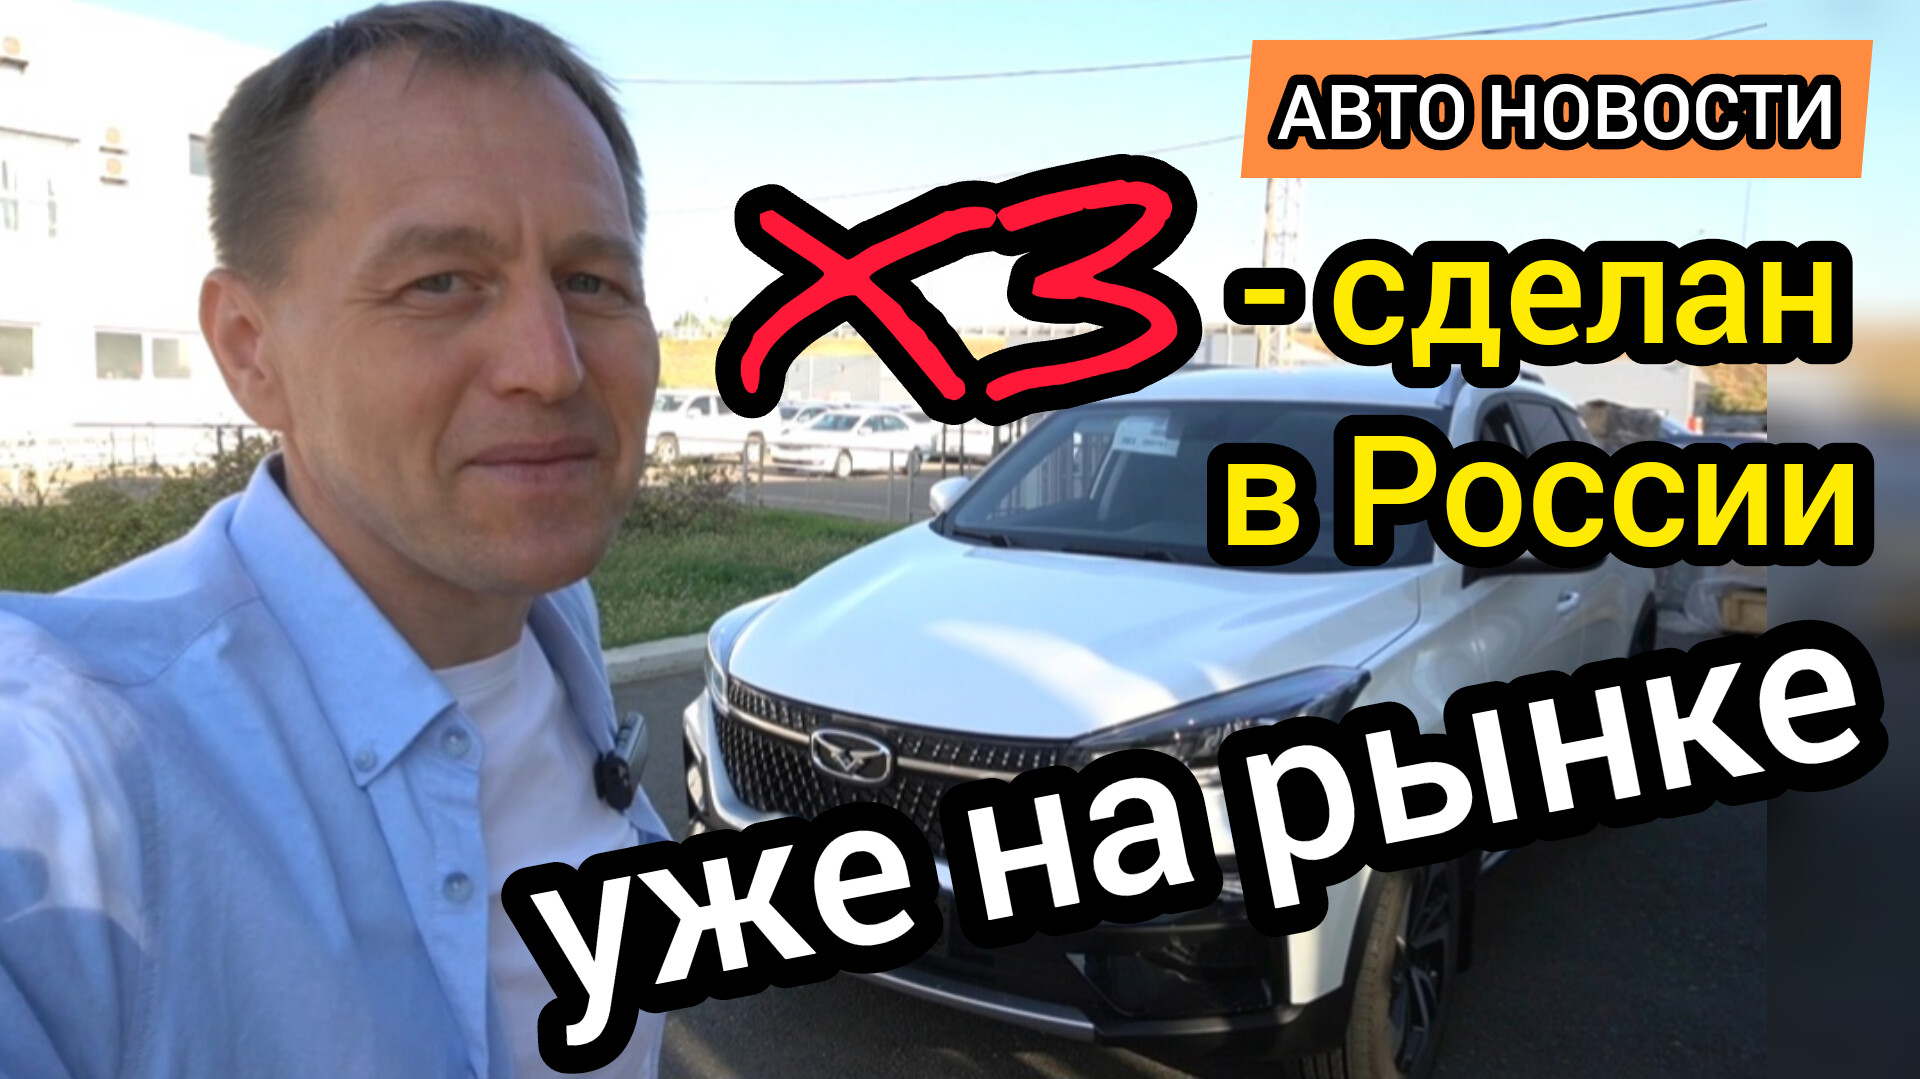 На рынок вышел КАИ X3 - новый российский кроссовер, по цене дешевле многих "китайцев"